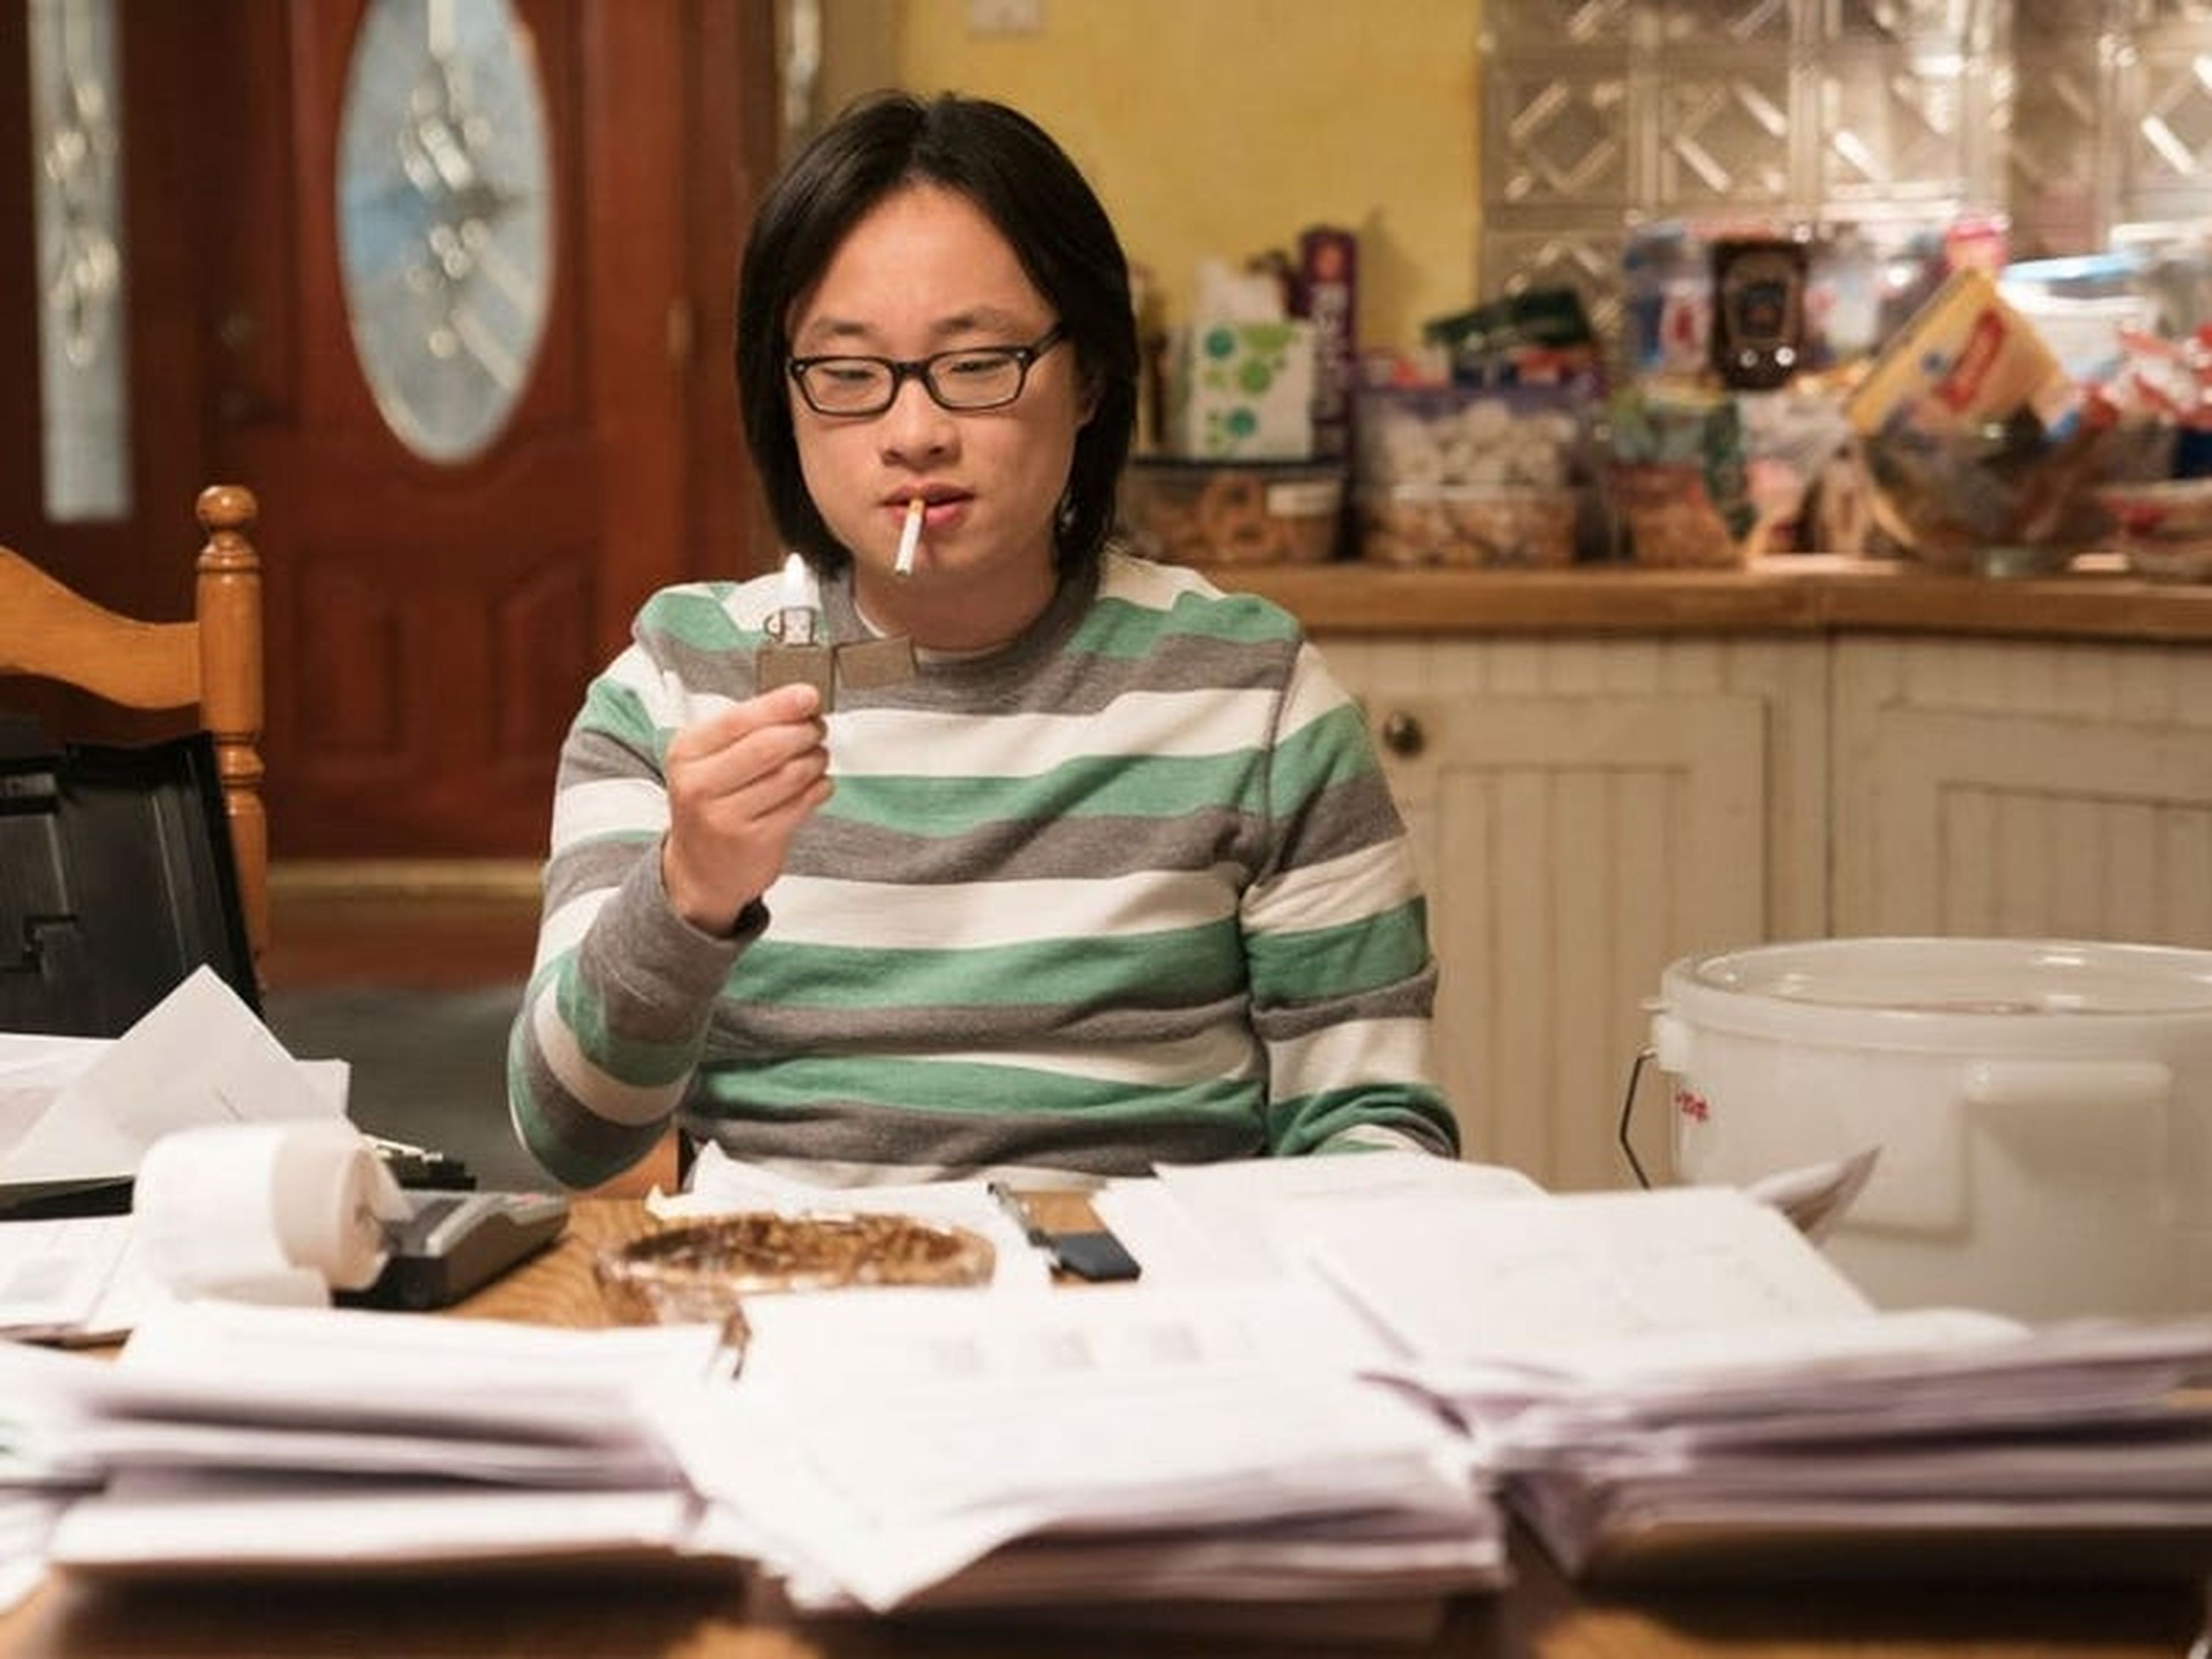 El personaje, Jian-Yang, en la serie Silicon Valley.